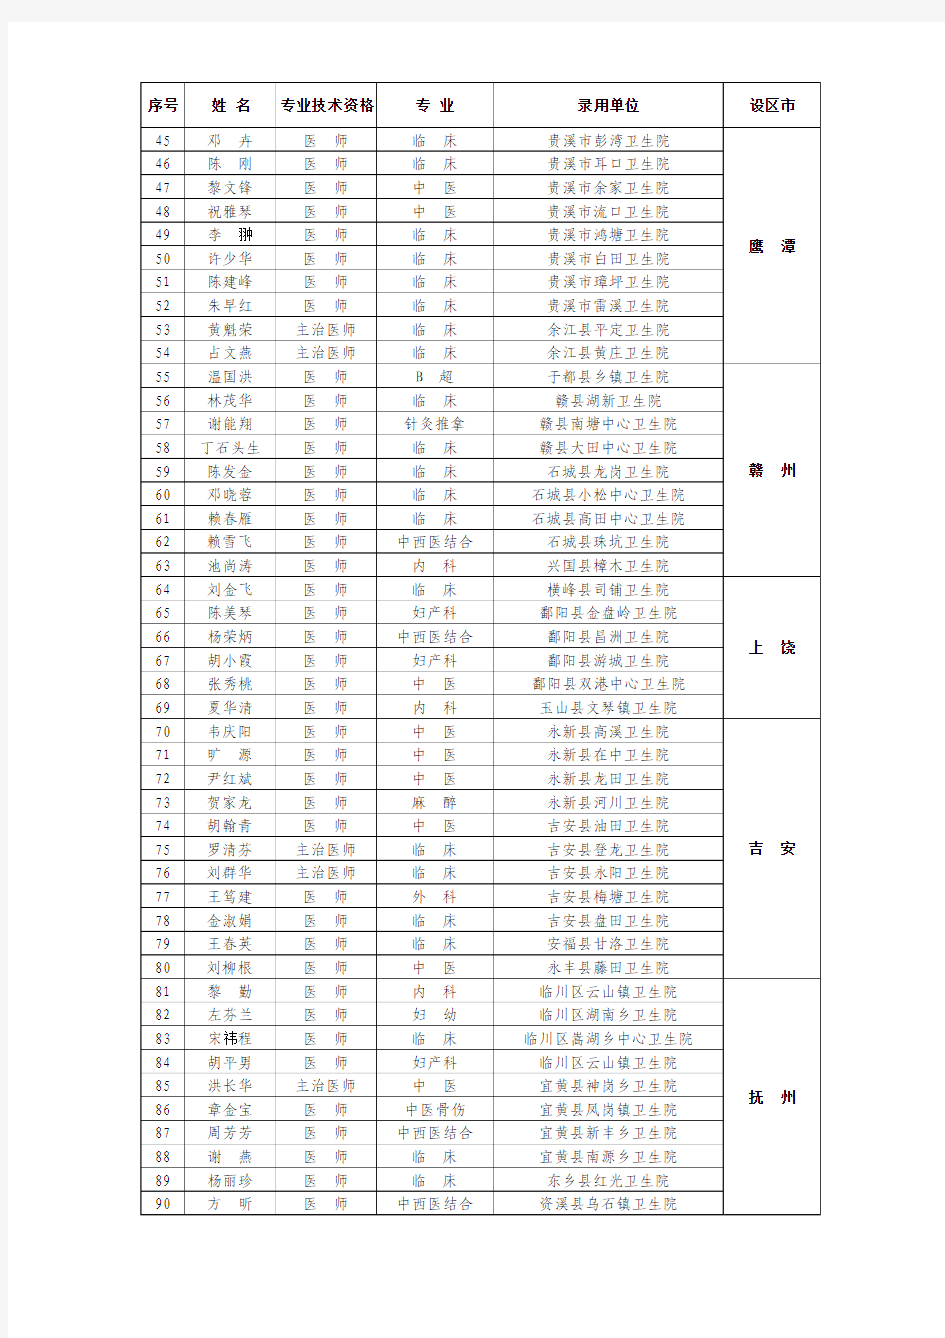 2012年江西省乡镇卫生院招聘执业医师录用名单xls